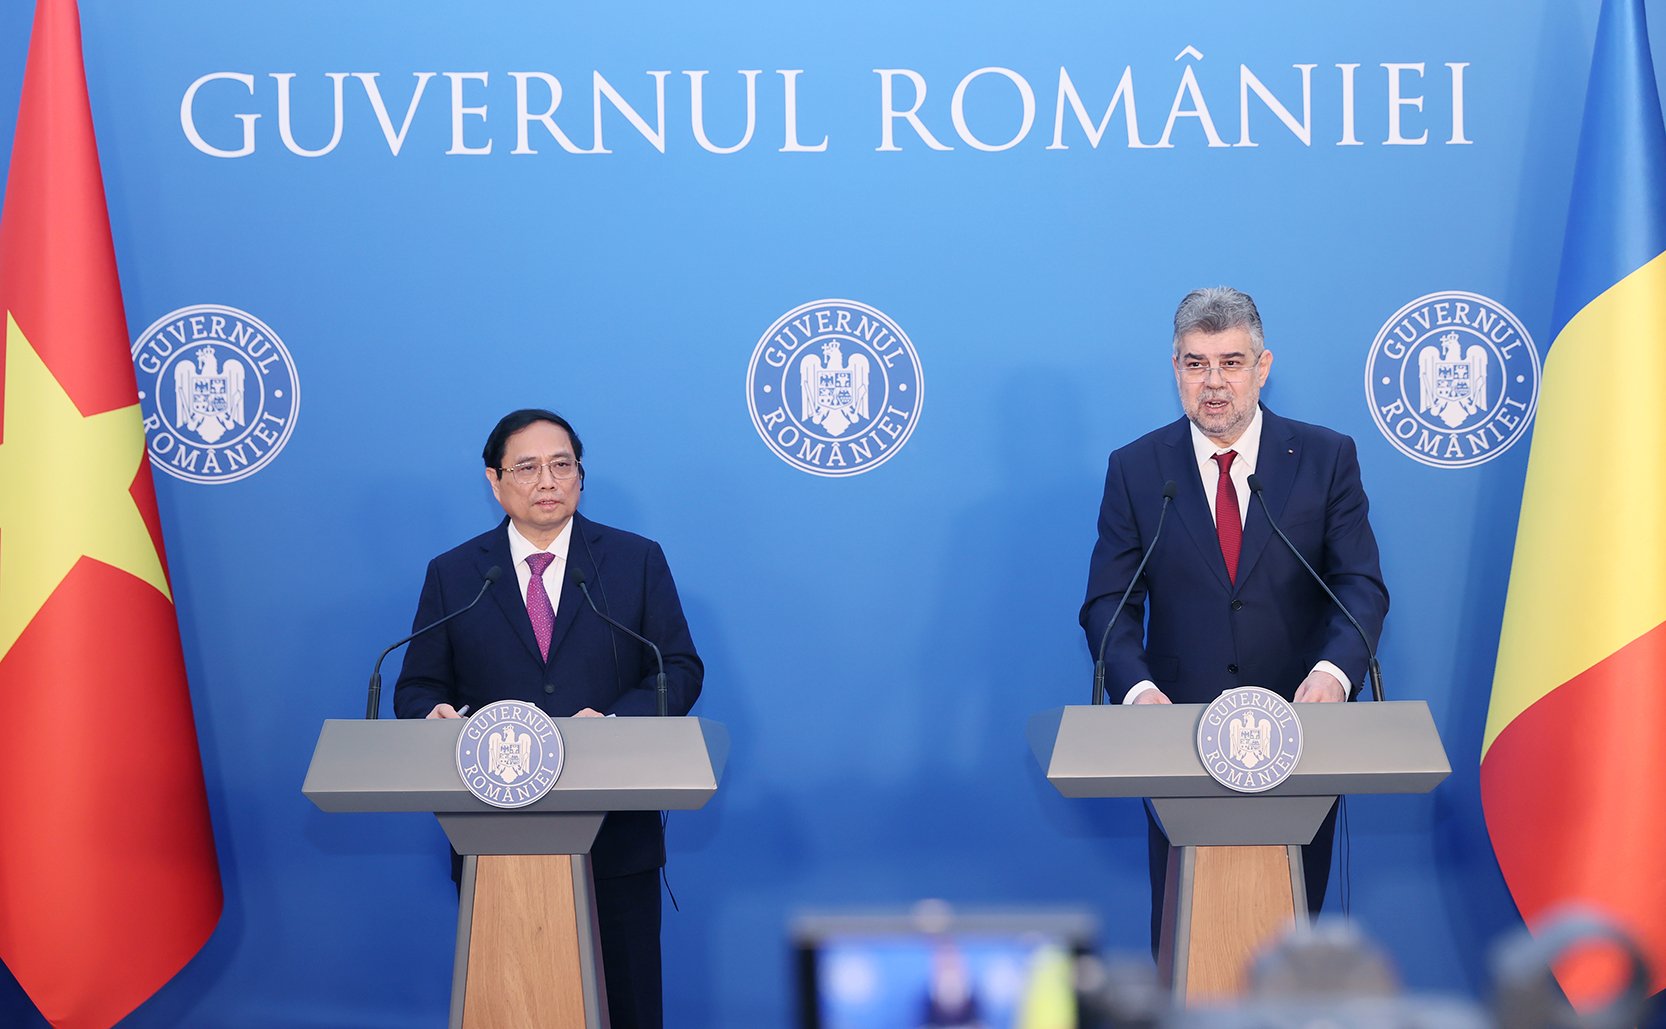 Thủ tướng Phạm Minh Chính và Thủ tướng Romania Ion-Marcel Ciolacu gặp gỡ, trao đổi thông tin với báo chí - Ảnh: VGP/Nhật Bắc